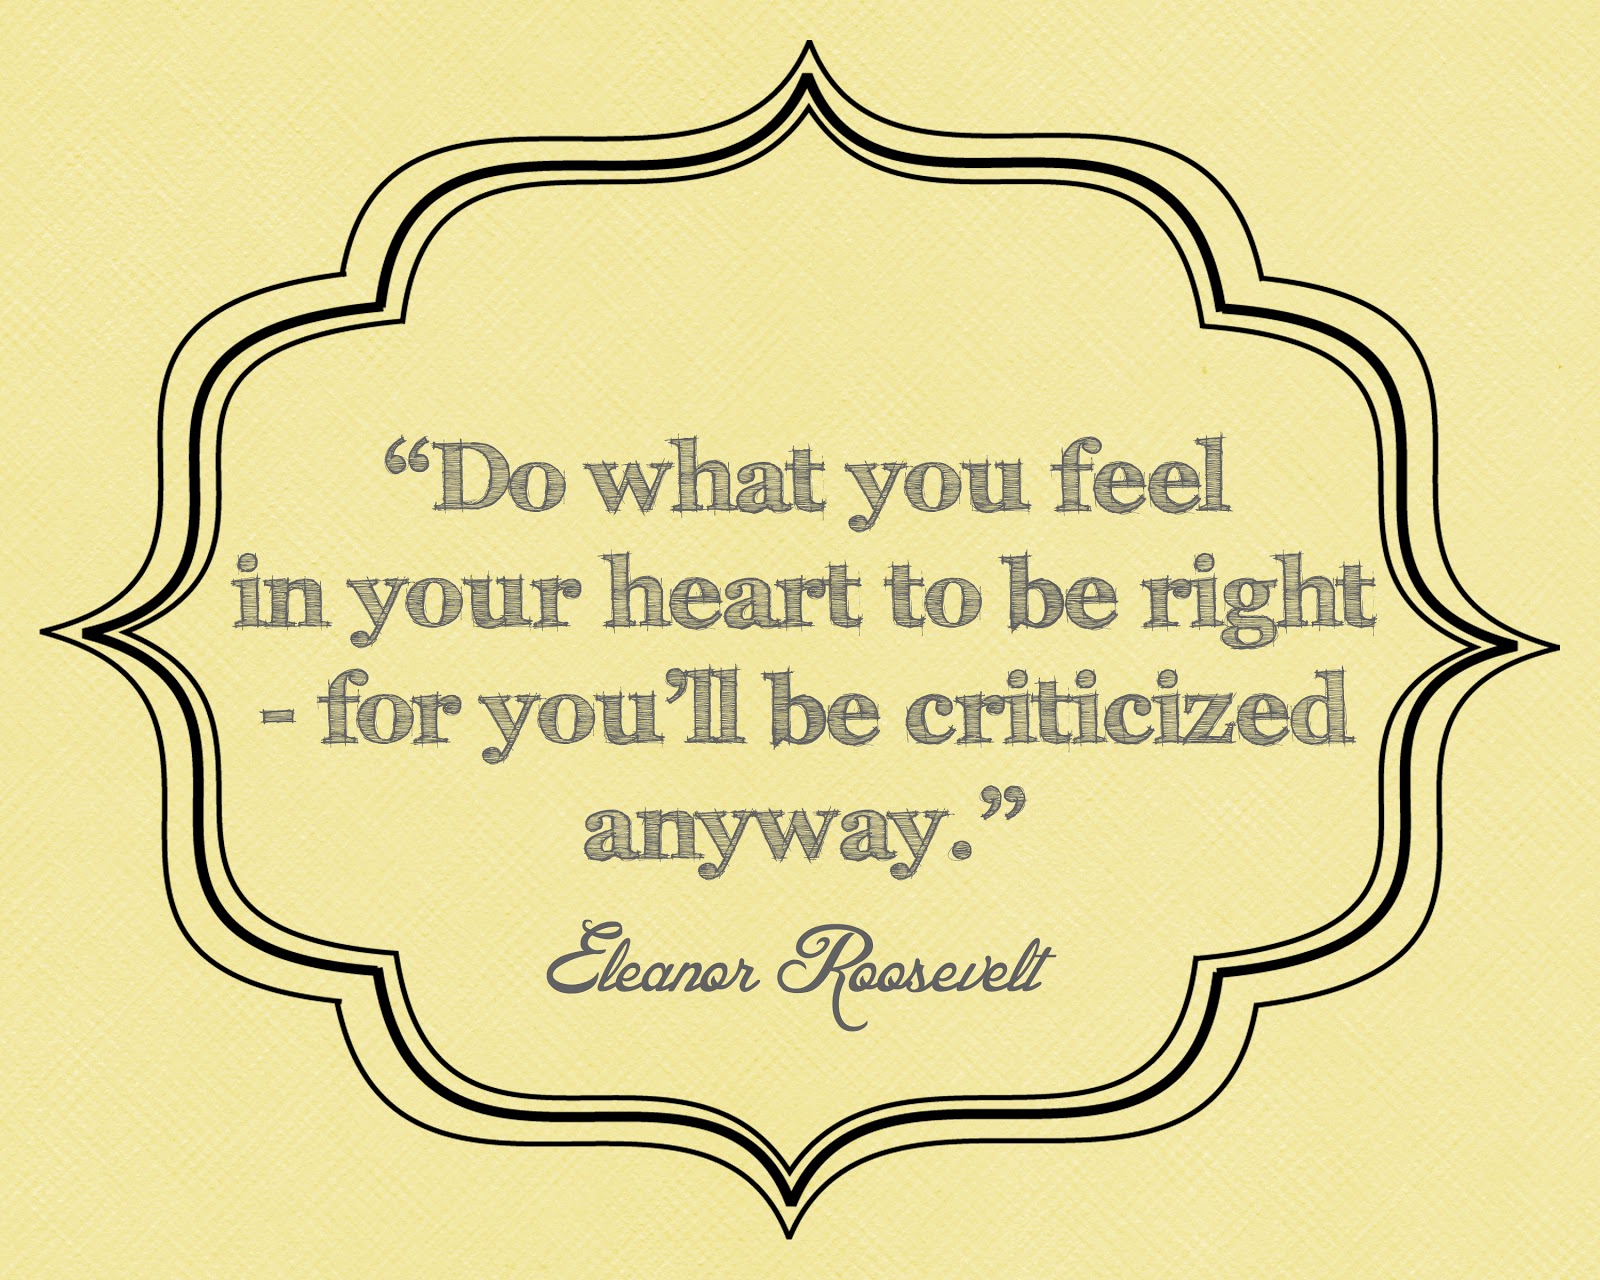 Eleanor Roosevelt quote #2